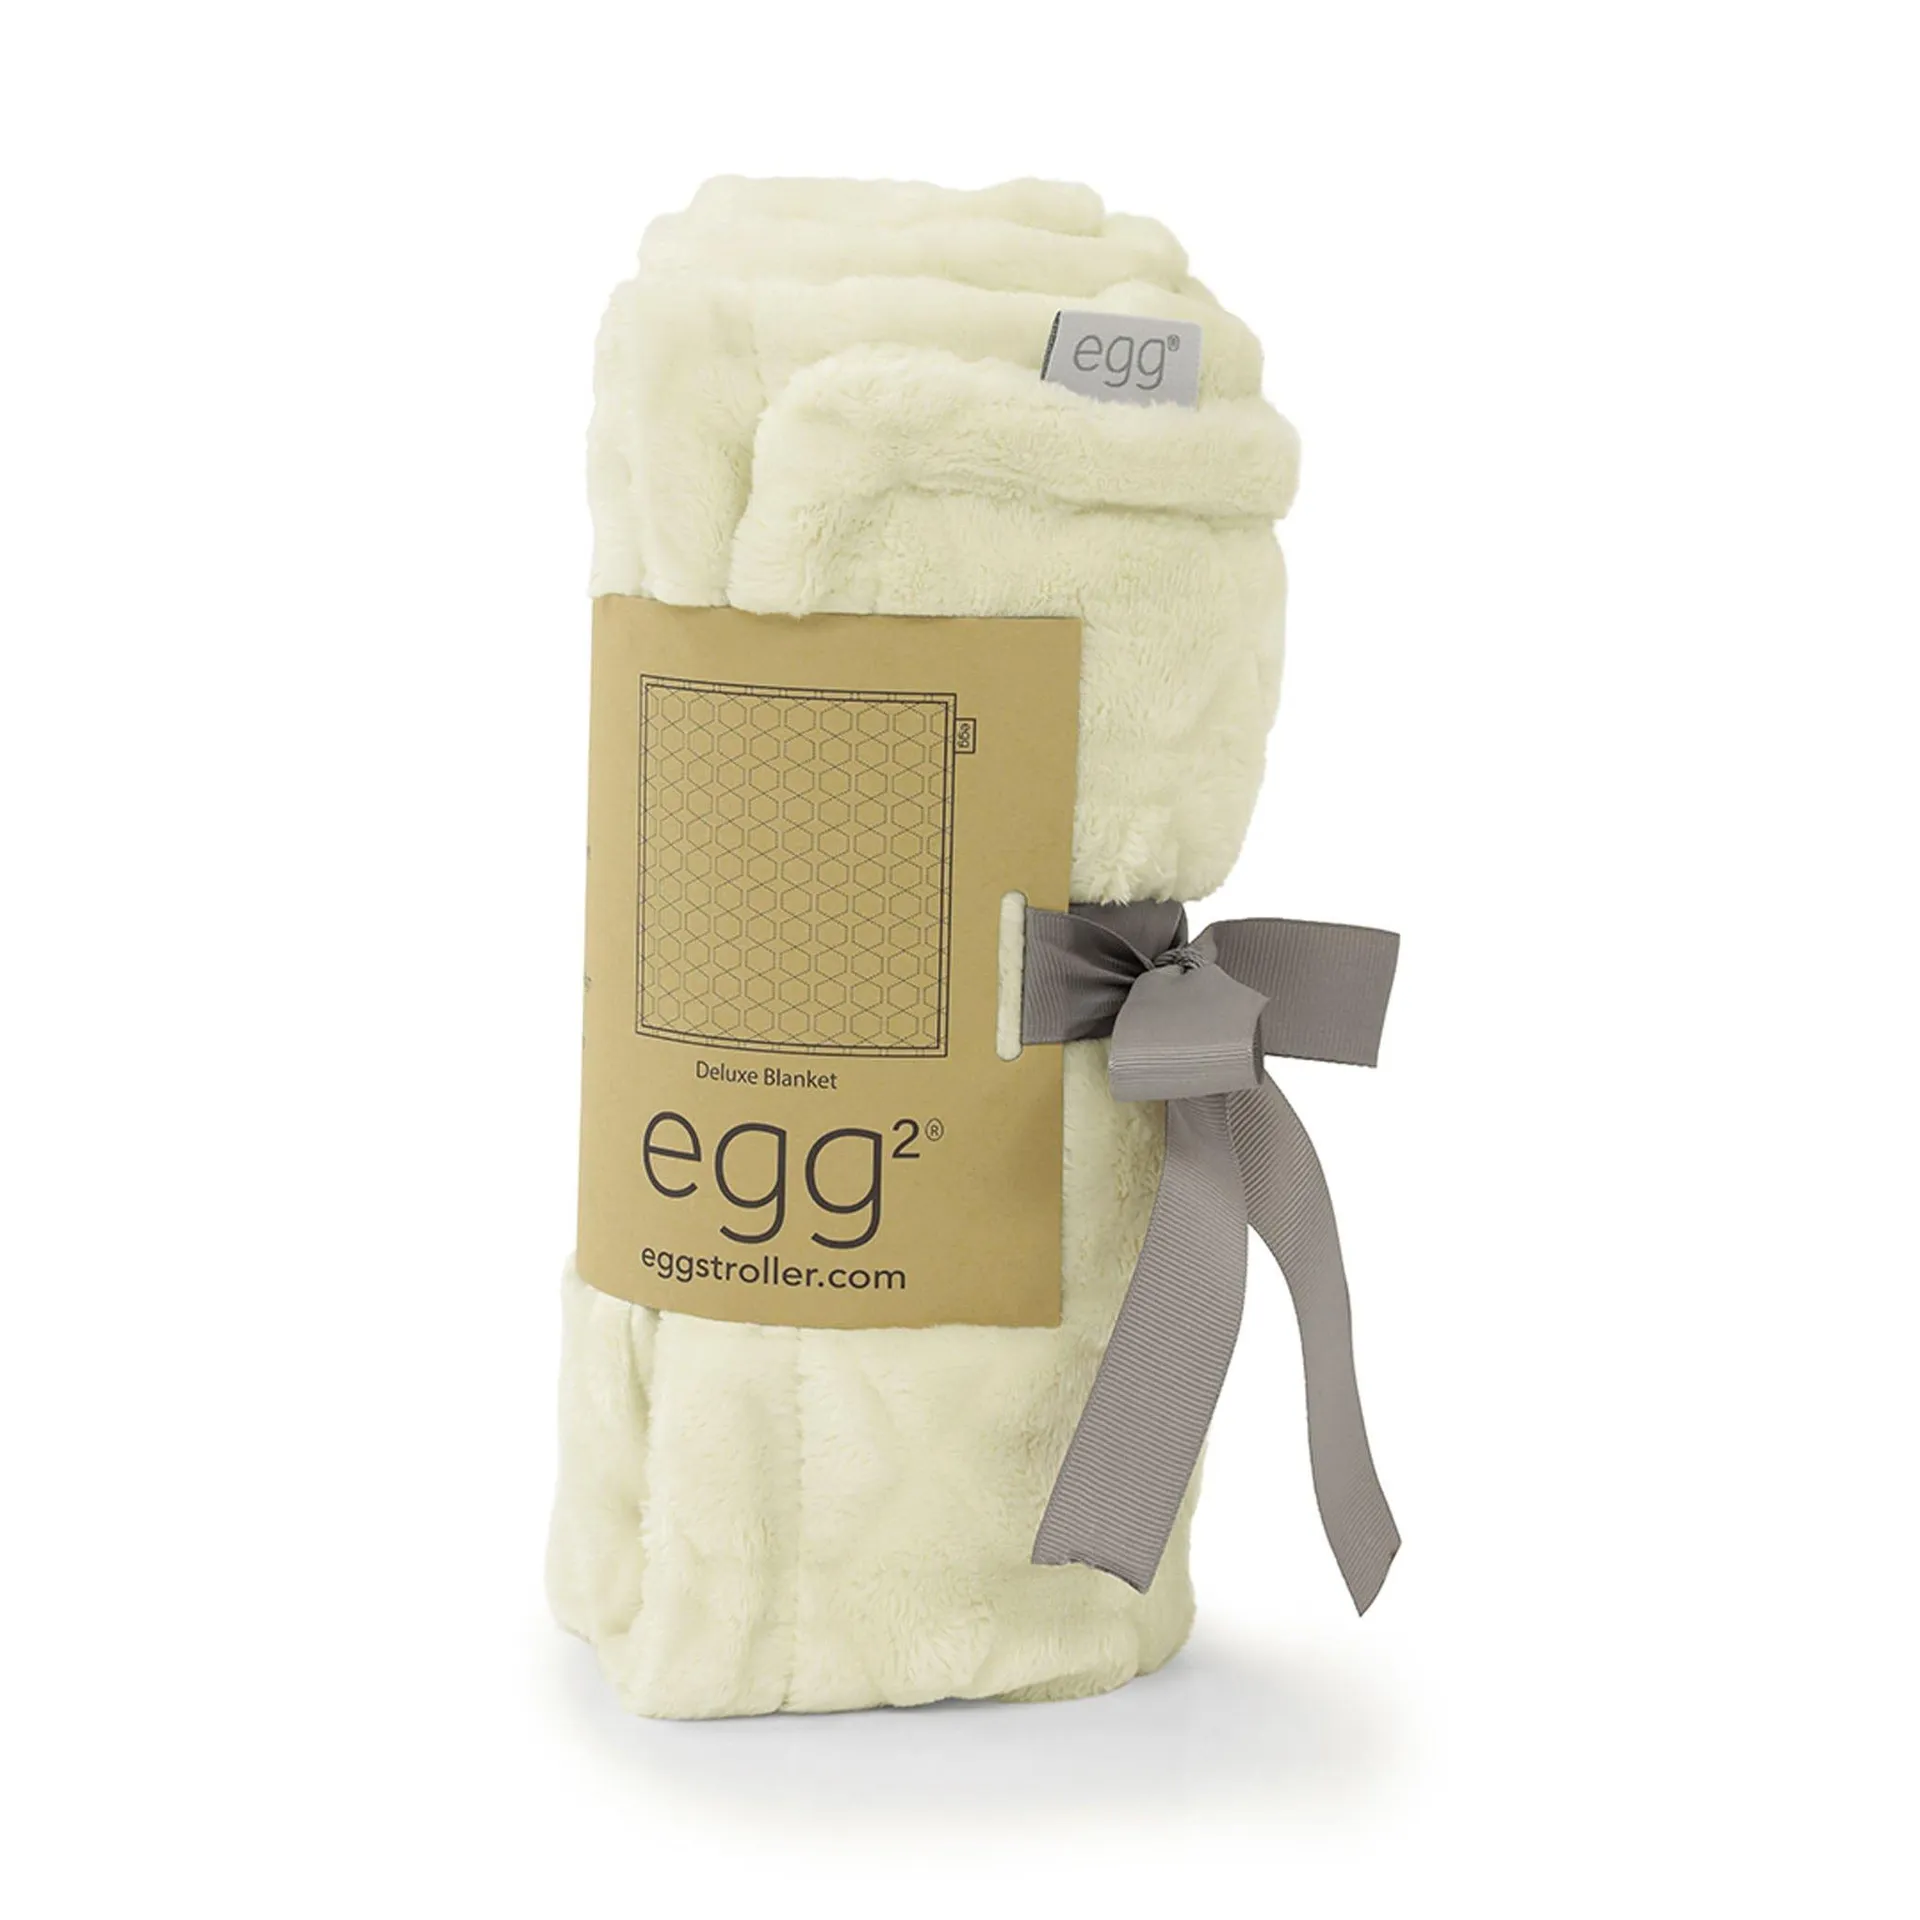 egg2 Deluxe Blanket in Cream